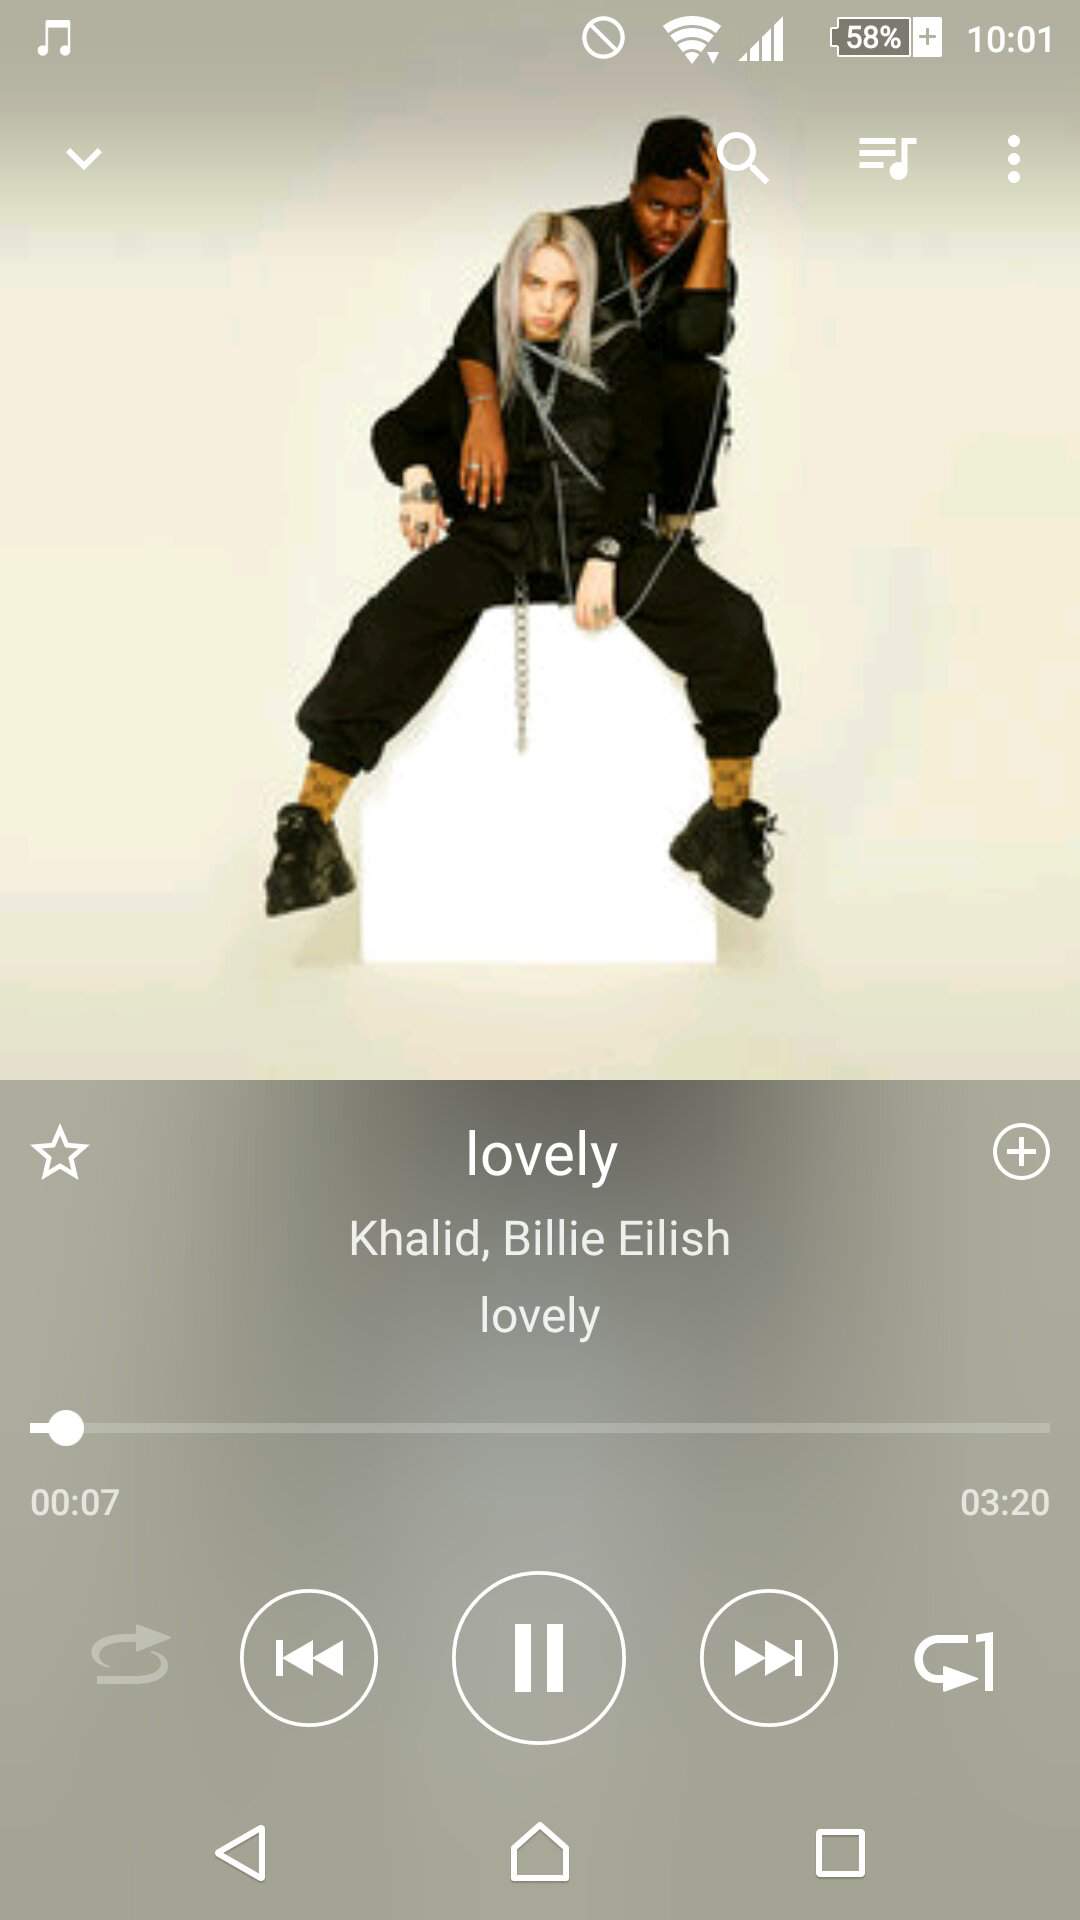 Billie eilish - lovely lyrics meaning